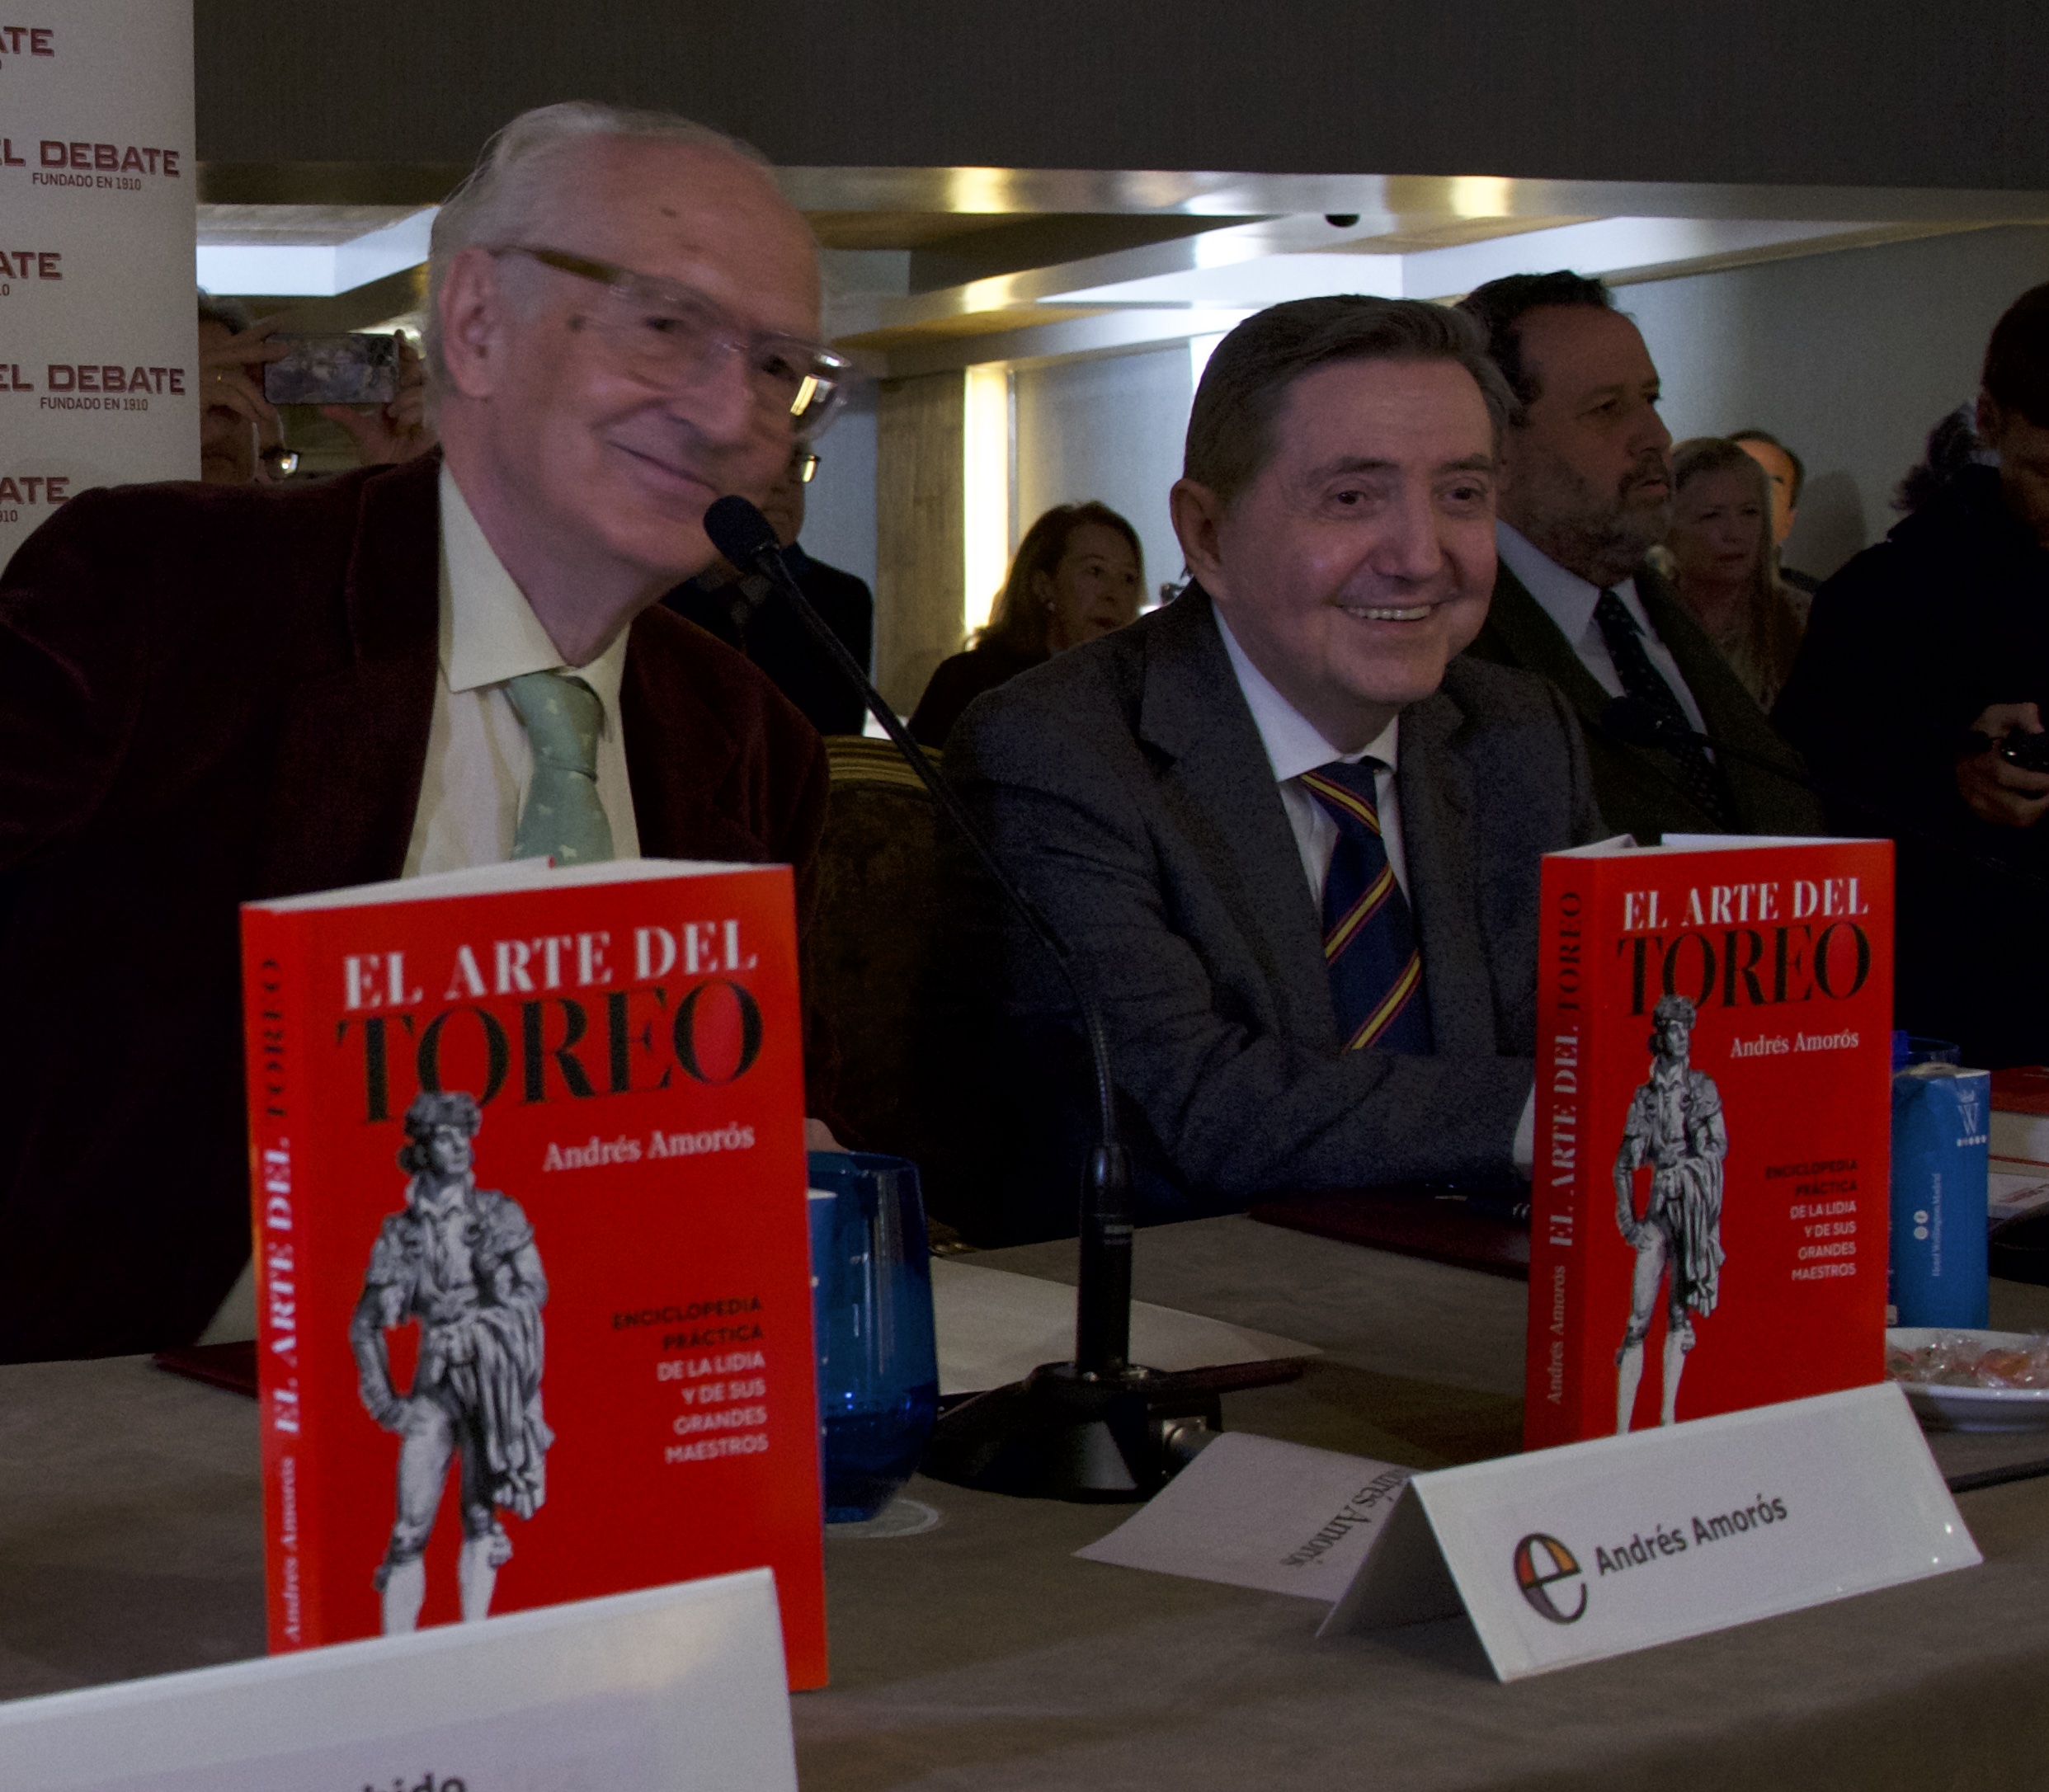 Federico Jiménez Losantos presenta el nuevo libro de Andrés Amorós: "El toro es un refugio de libertad"